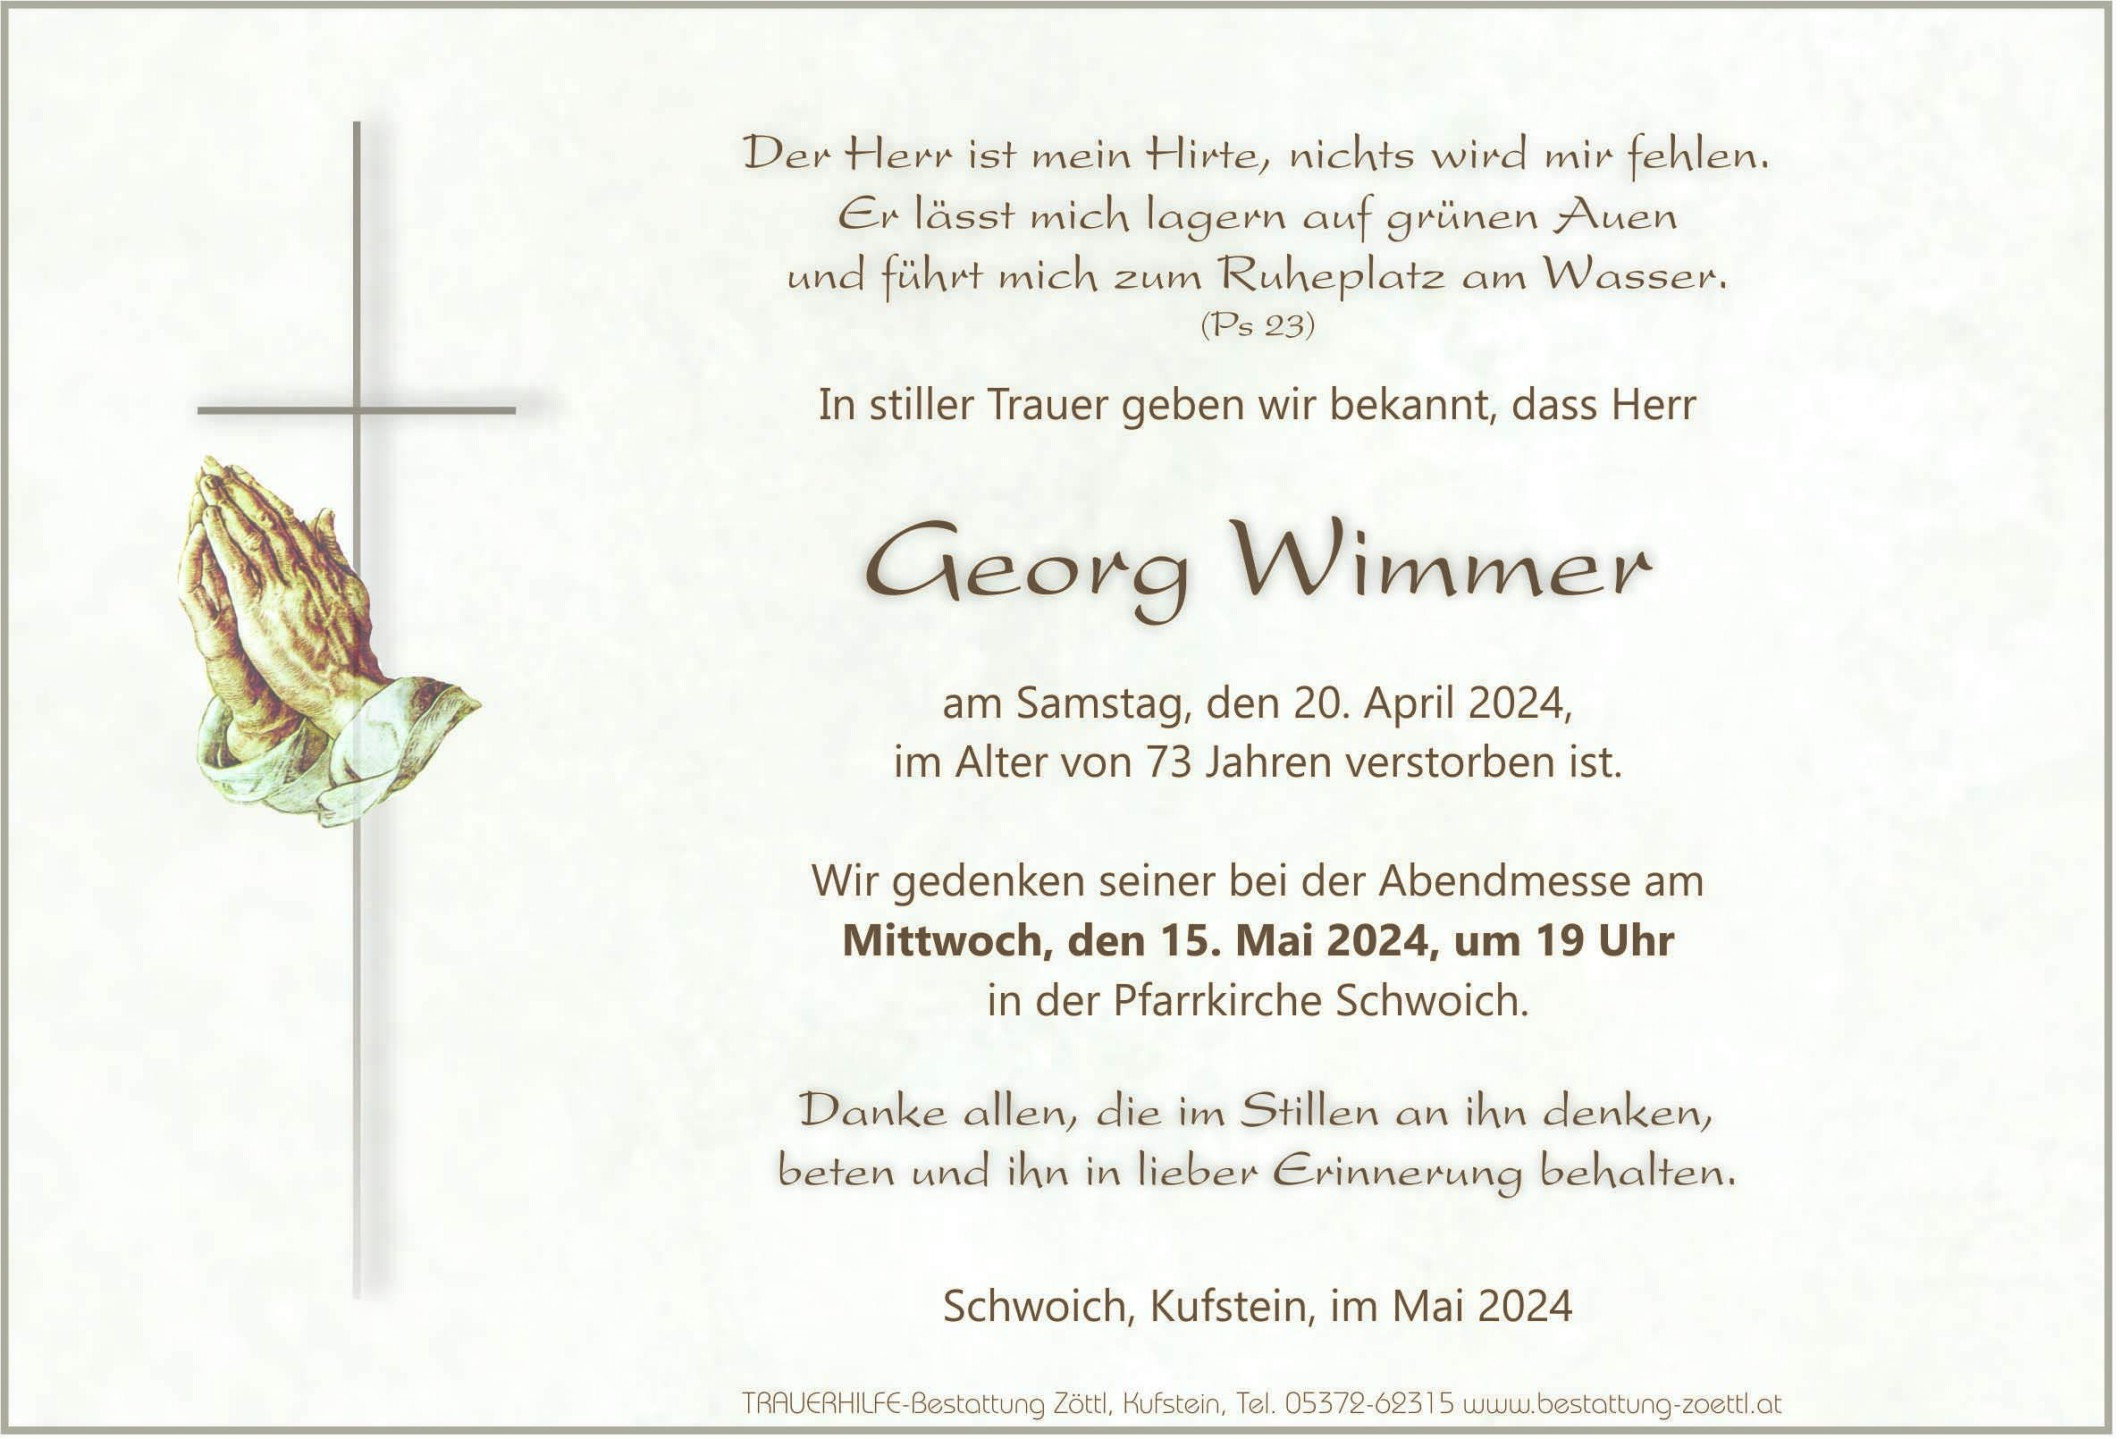 Georg Wimmer